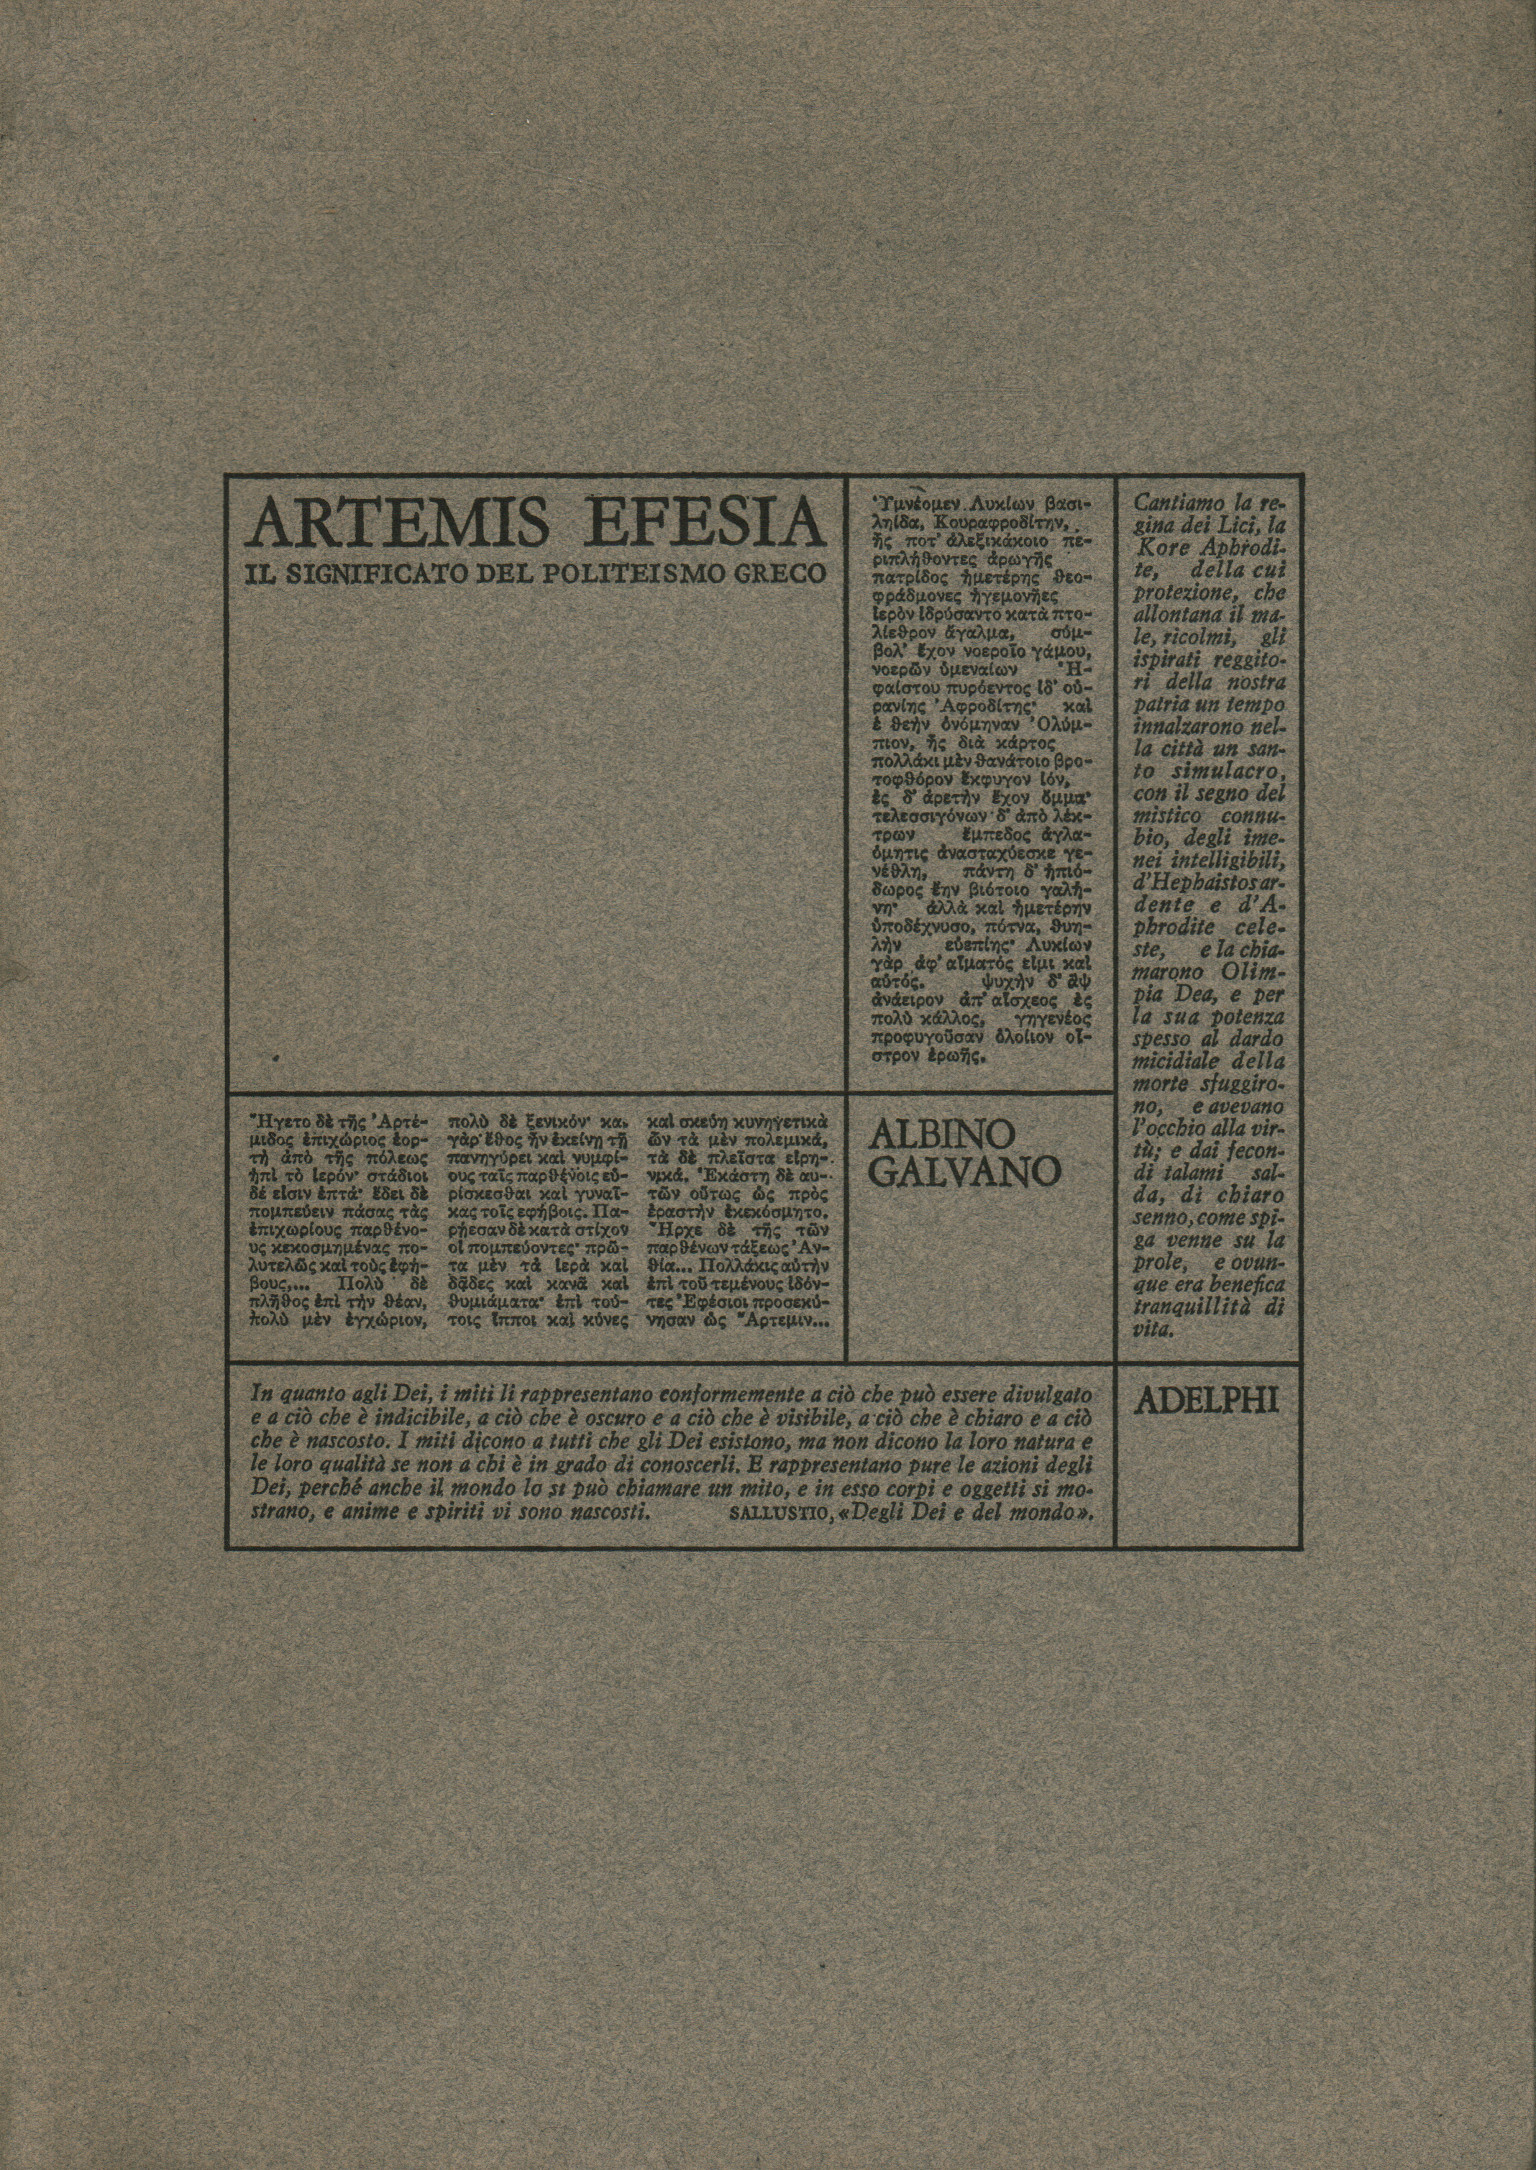 Artemisa Efesia. El significado de la política